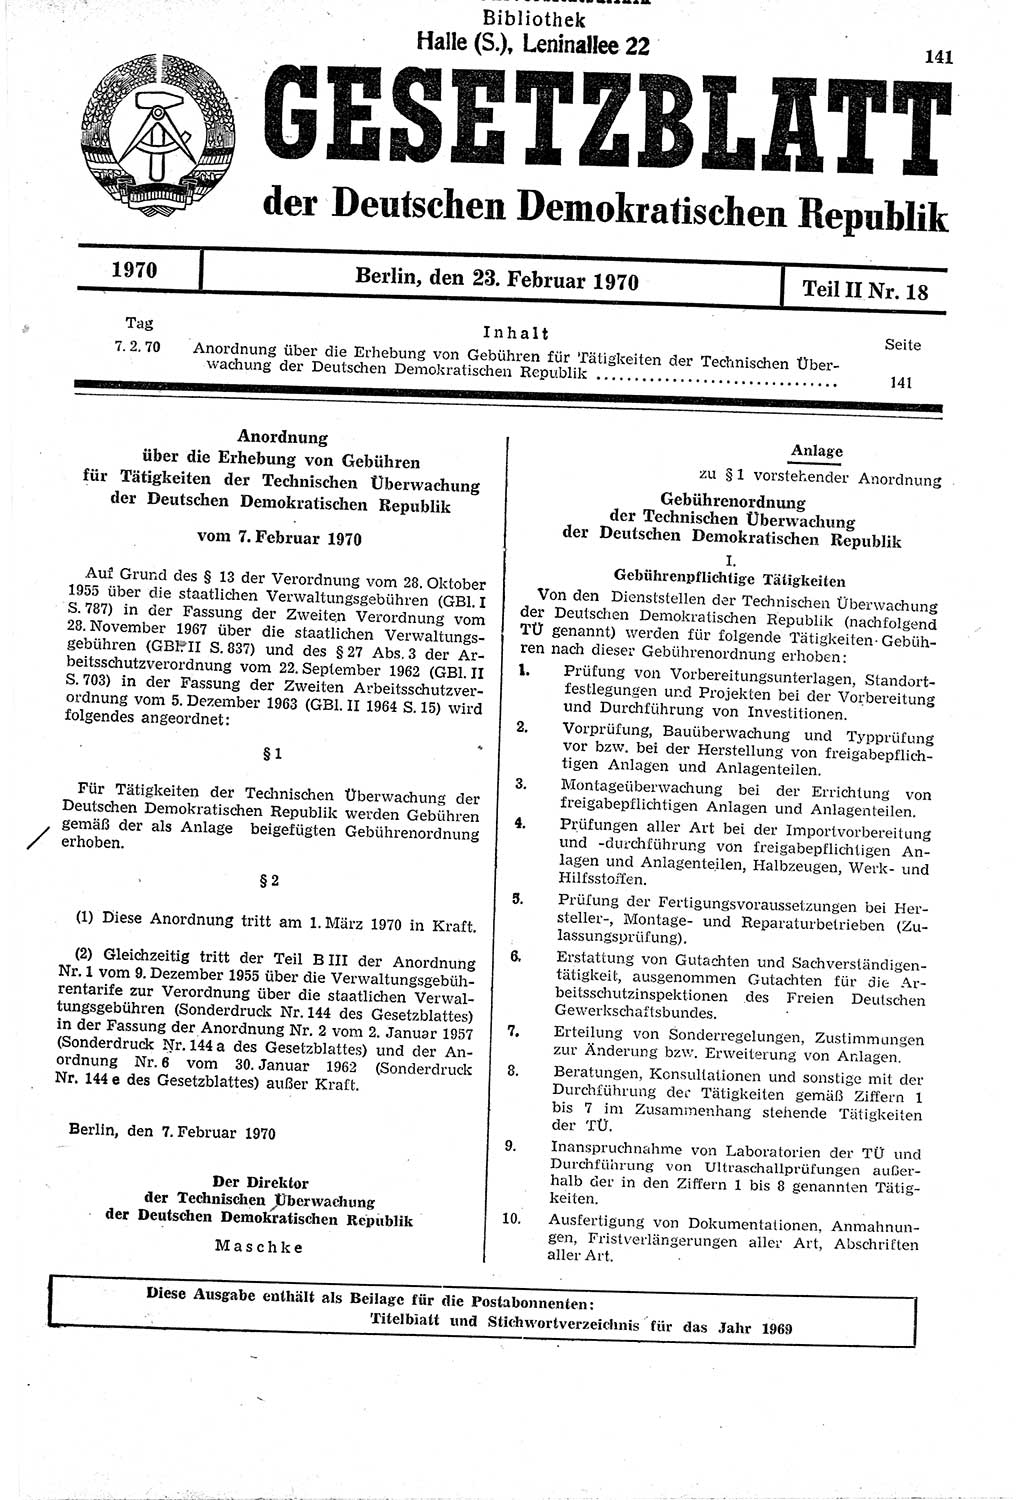 Gesetzblatt (GBl.) der Deutschen Demokratischen Republik (DDR) Teil ⅠⅠ 1970, Seite 141 (GBl. DDR ⅠⅠ 1970, S. 141)